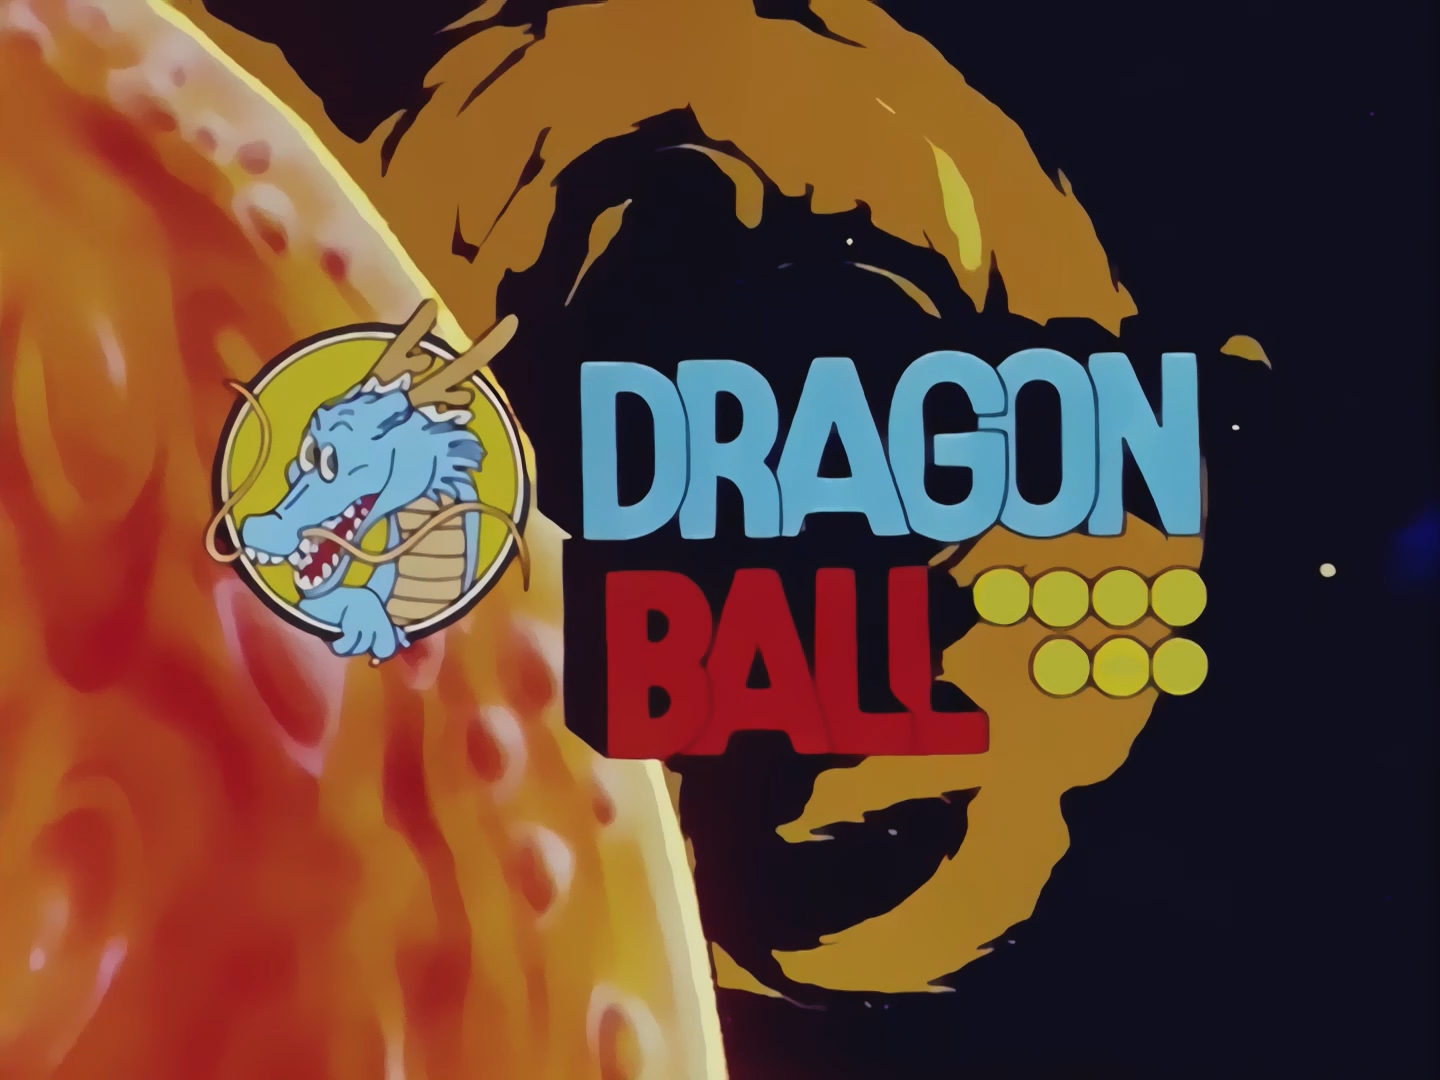 Dragon Ball Z (European Portuguese dub) - Horrible Dubs Wiki